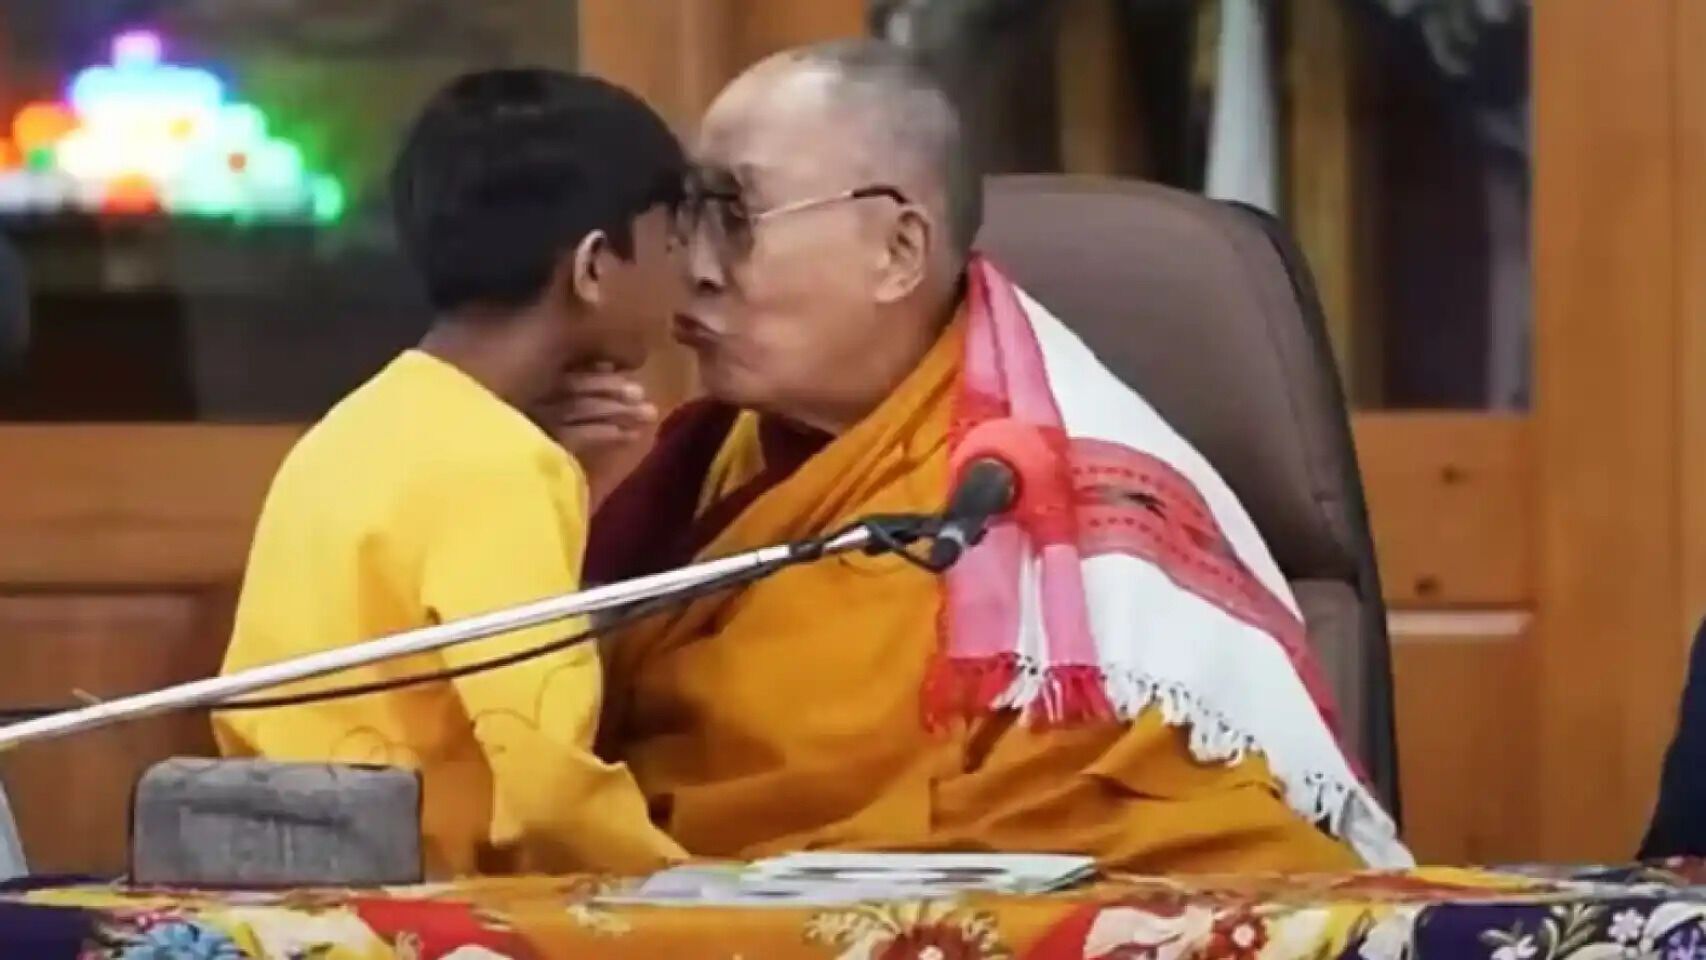 Далай-лама попал в громкий скандал из-за поцелуя с мальчиком: история получила продолжение. Видео